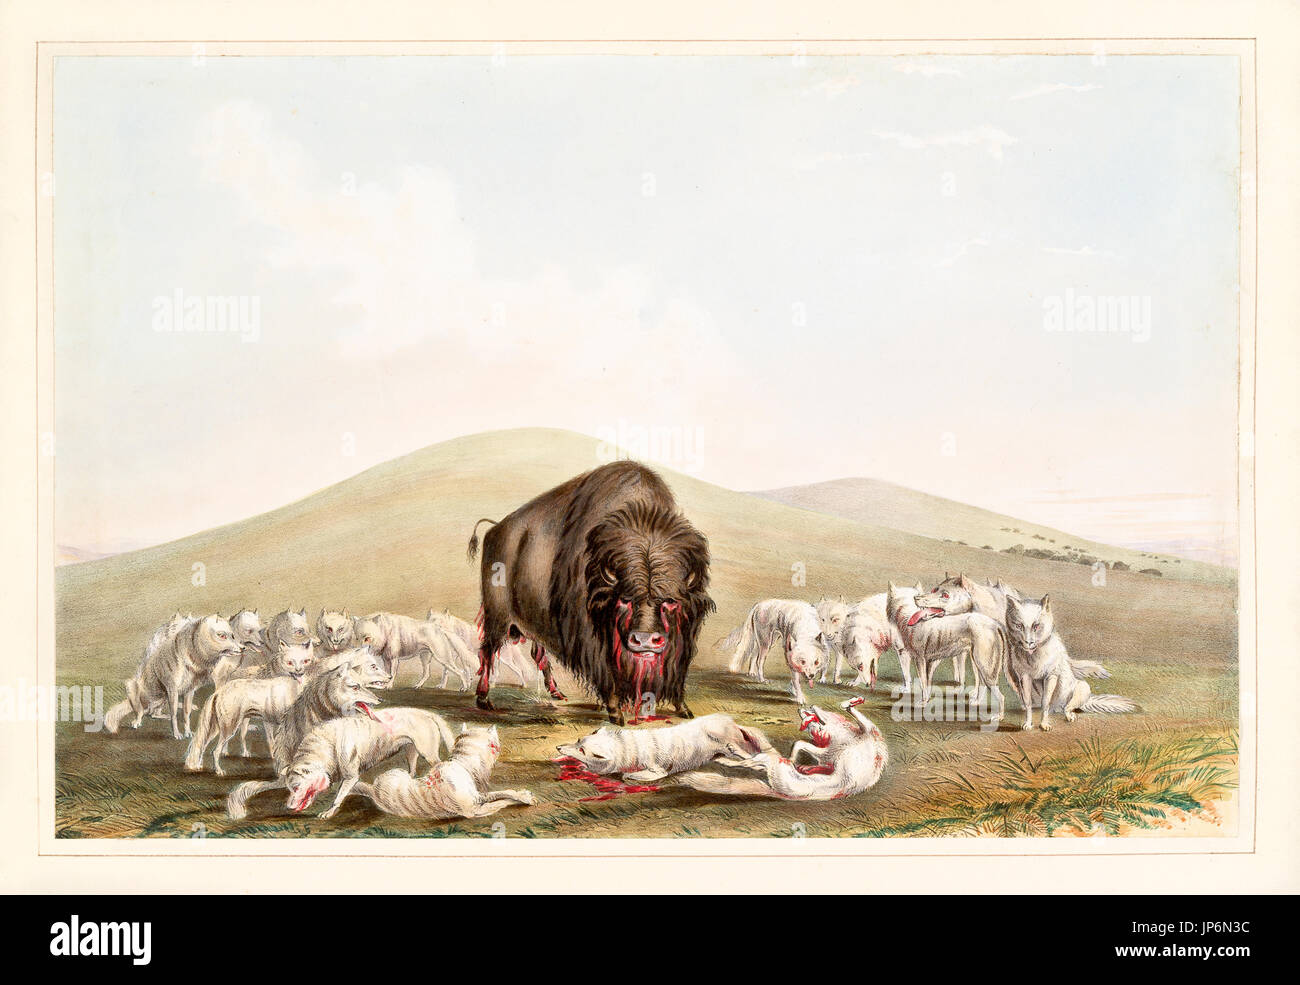 Охотились на бизонов. Гора черепов бизонов 1870. Стадо бизонов. Охота на бизонов. Бизон и волк.